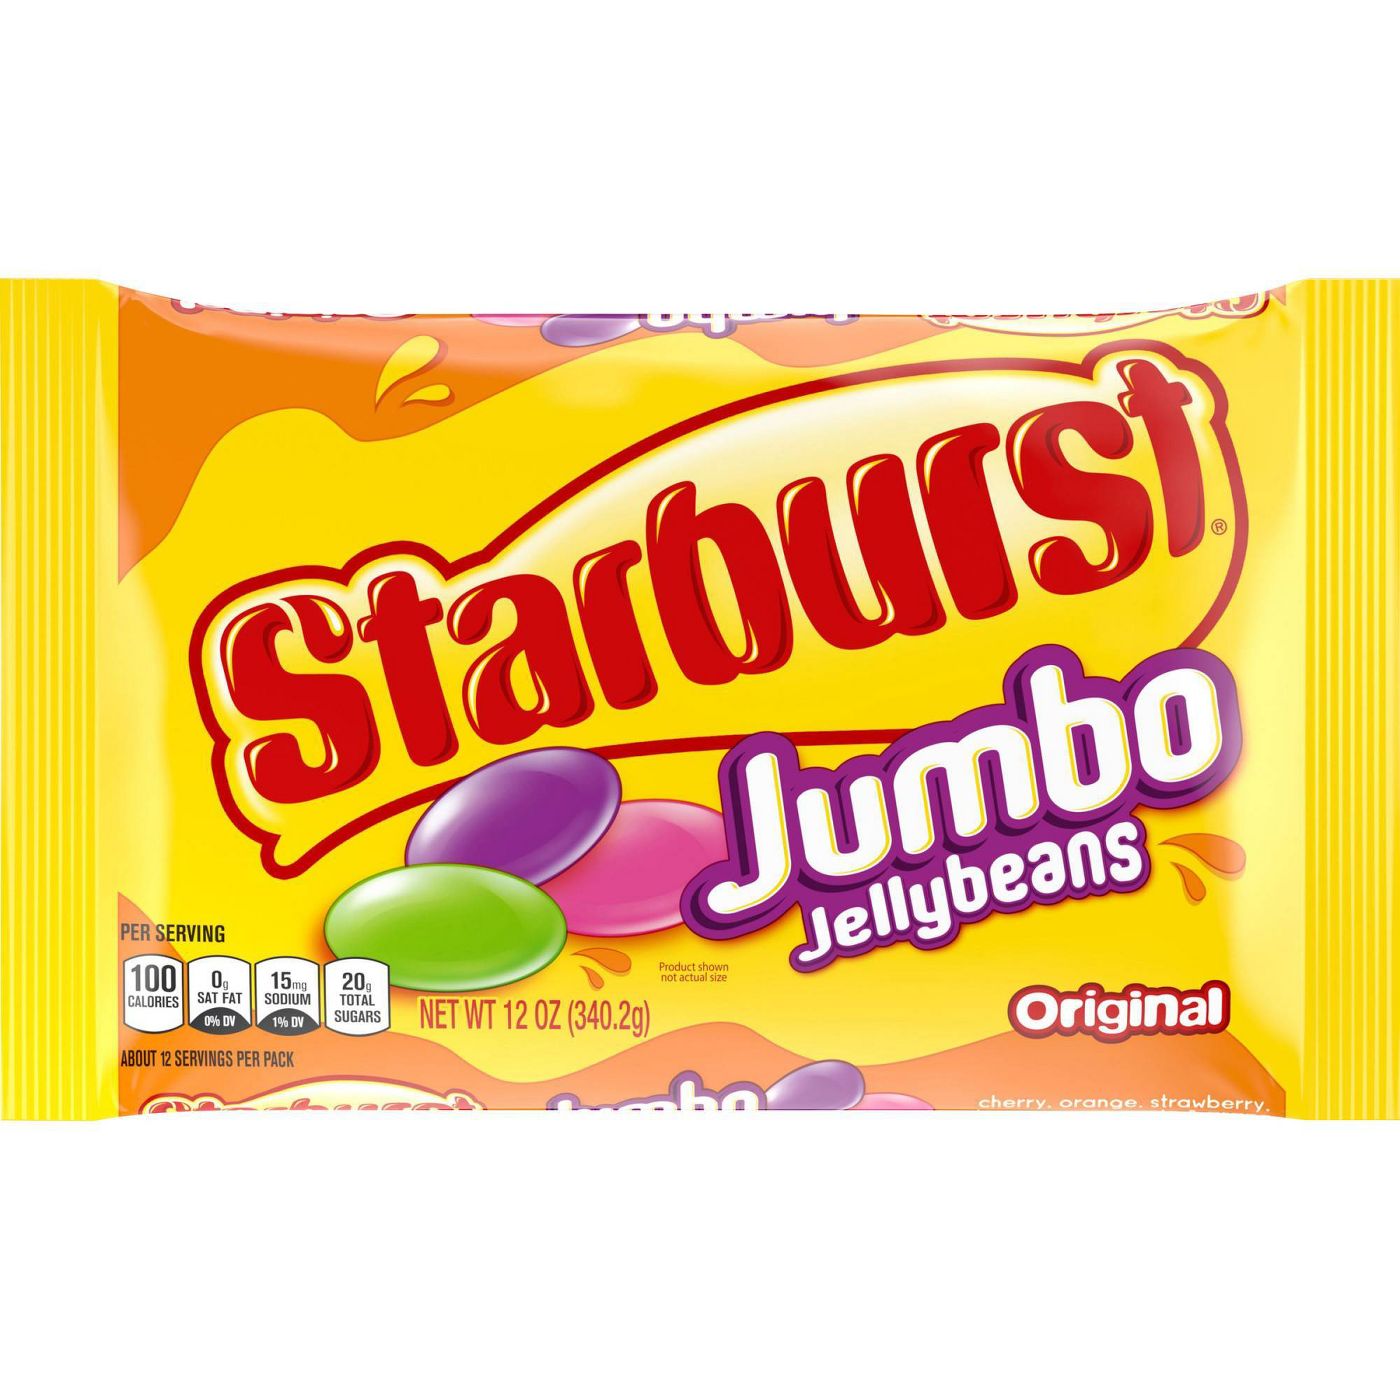 Starburst Easter Jumbo Original Jelly Beans, 12oz